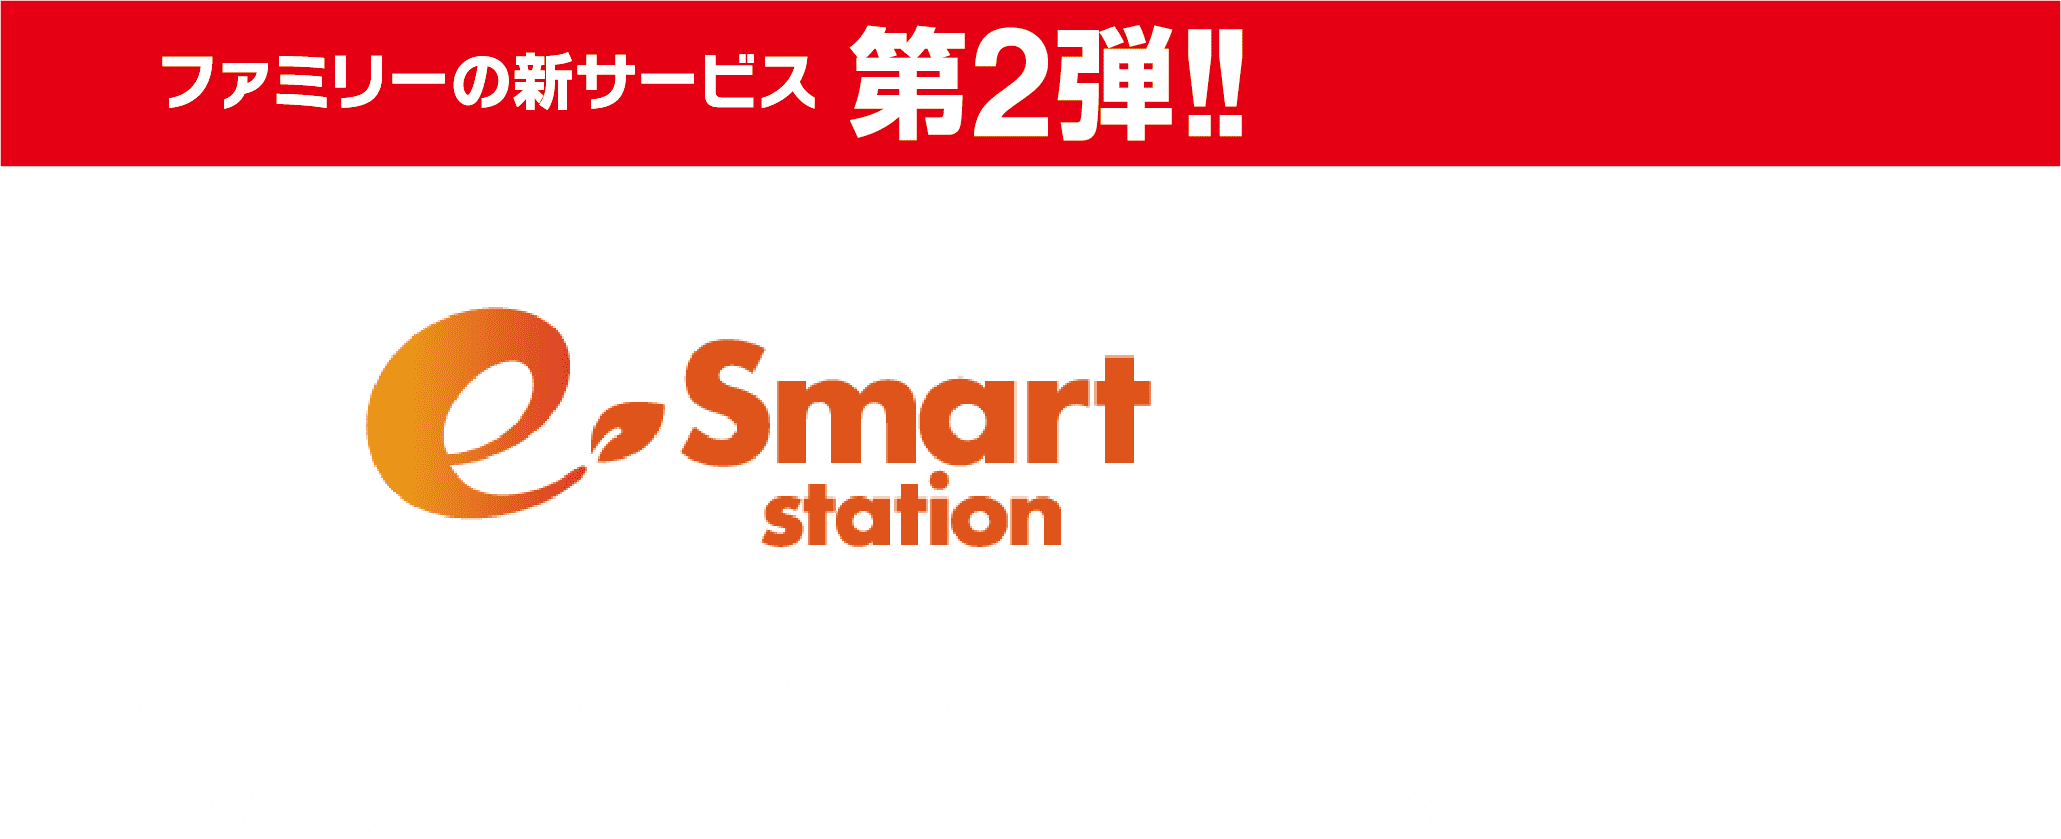 ファミリーの新サービス  第2弾!! e-smart station